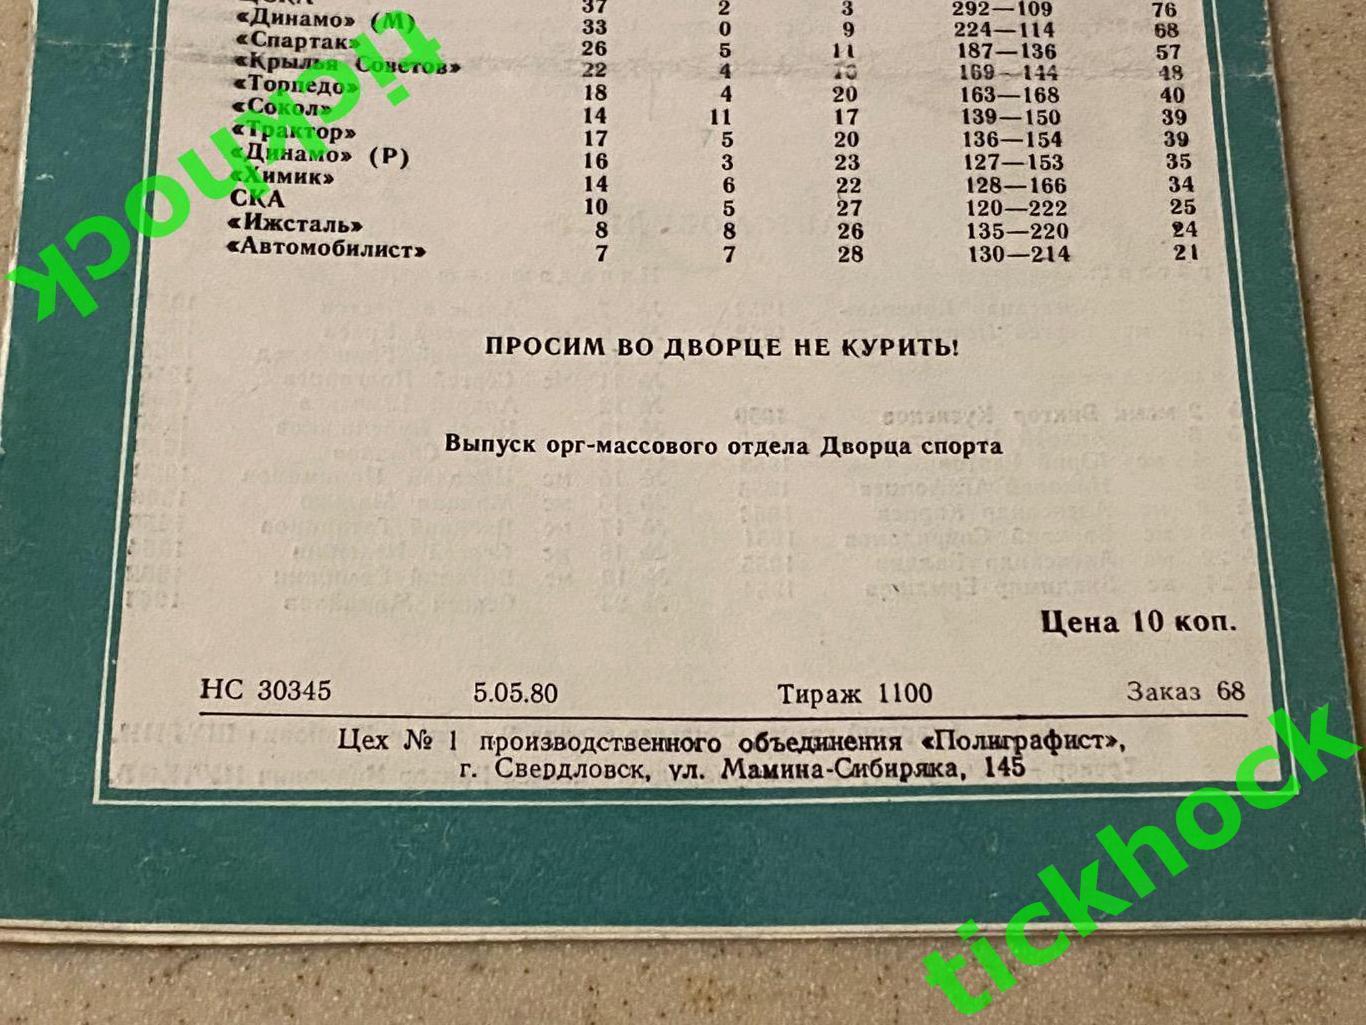 Автомобилист Свердловск - СКА ЛЕНИНГРАД / Санкт-Петербург - 07.05.1980 ---SY 2